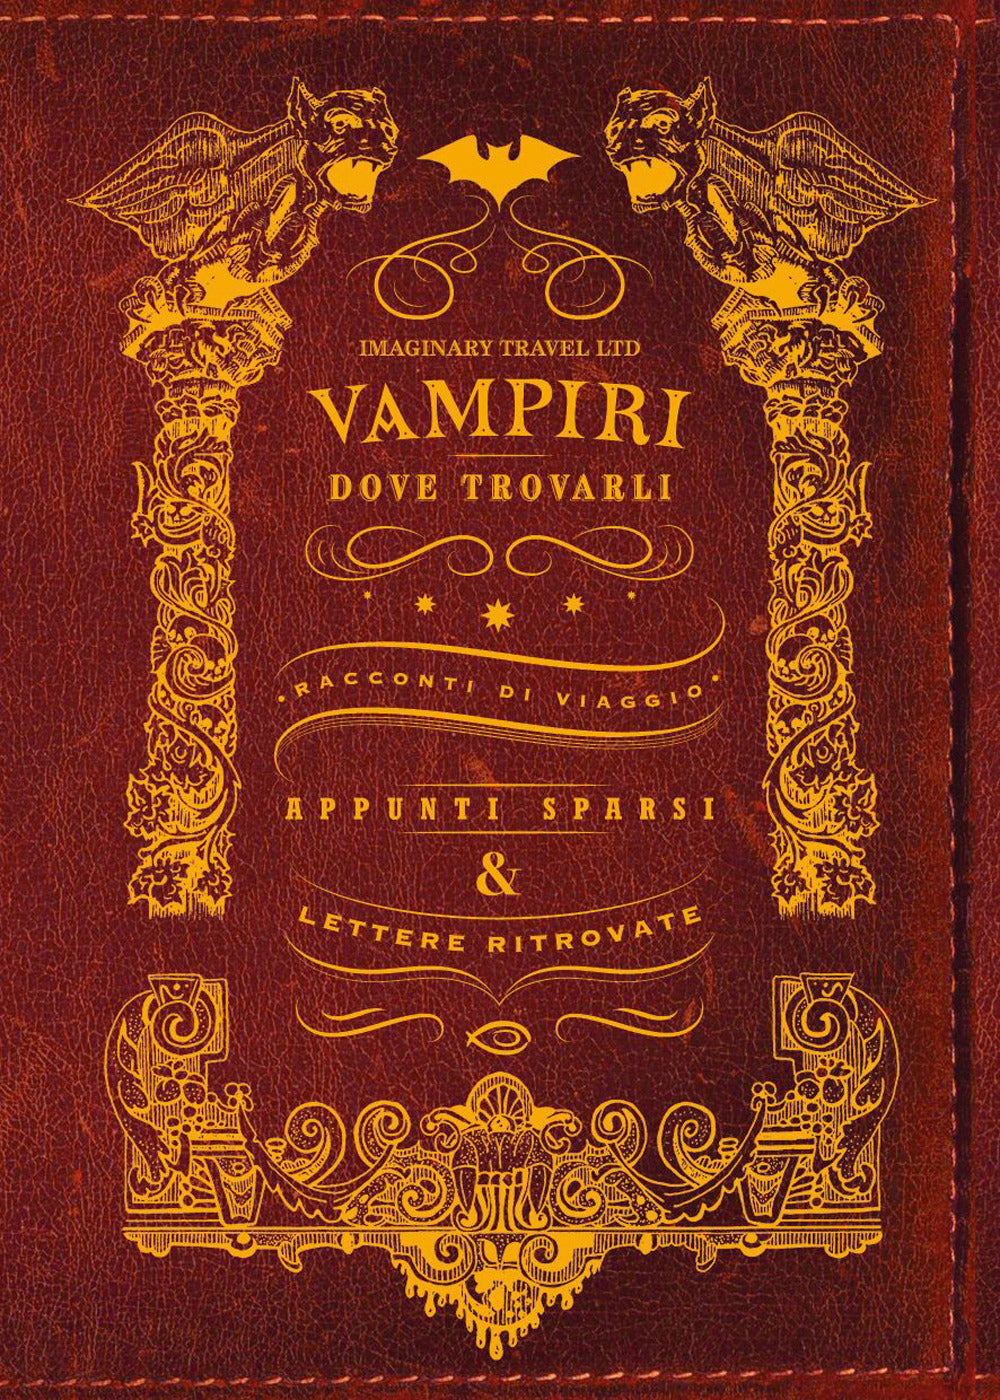 Vampiri: dove trovarli. Racconti di viaggio. Appunti sparsi & lettere ritrovate. Ediz. illustrata.